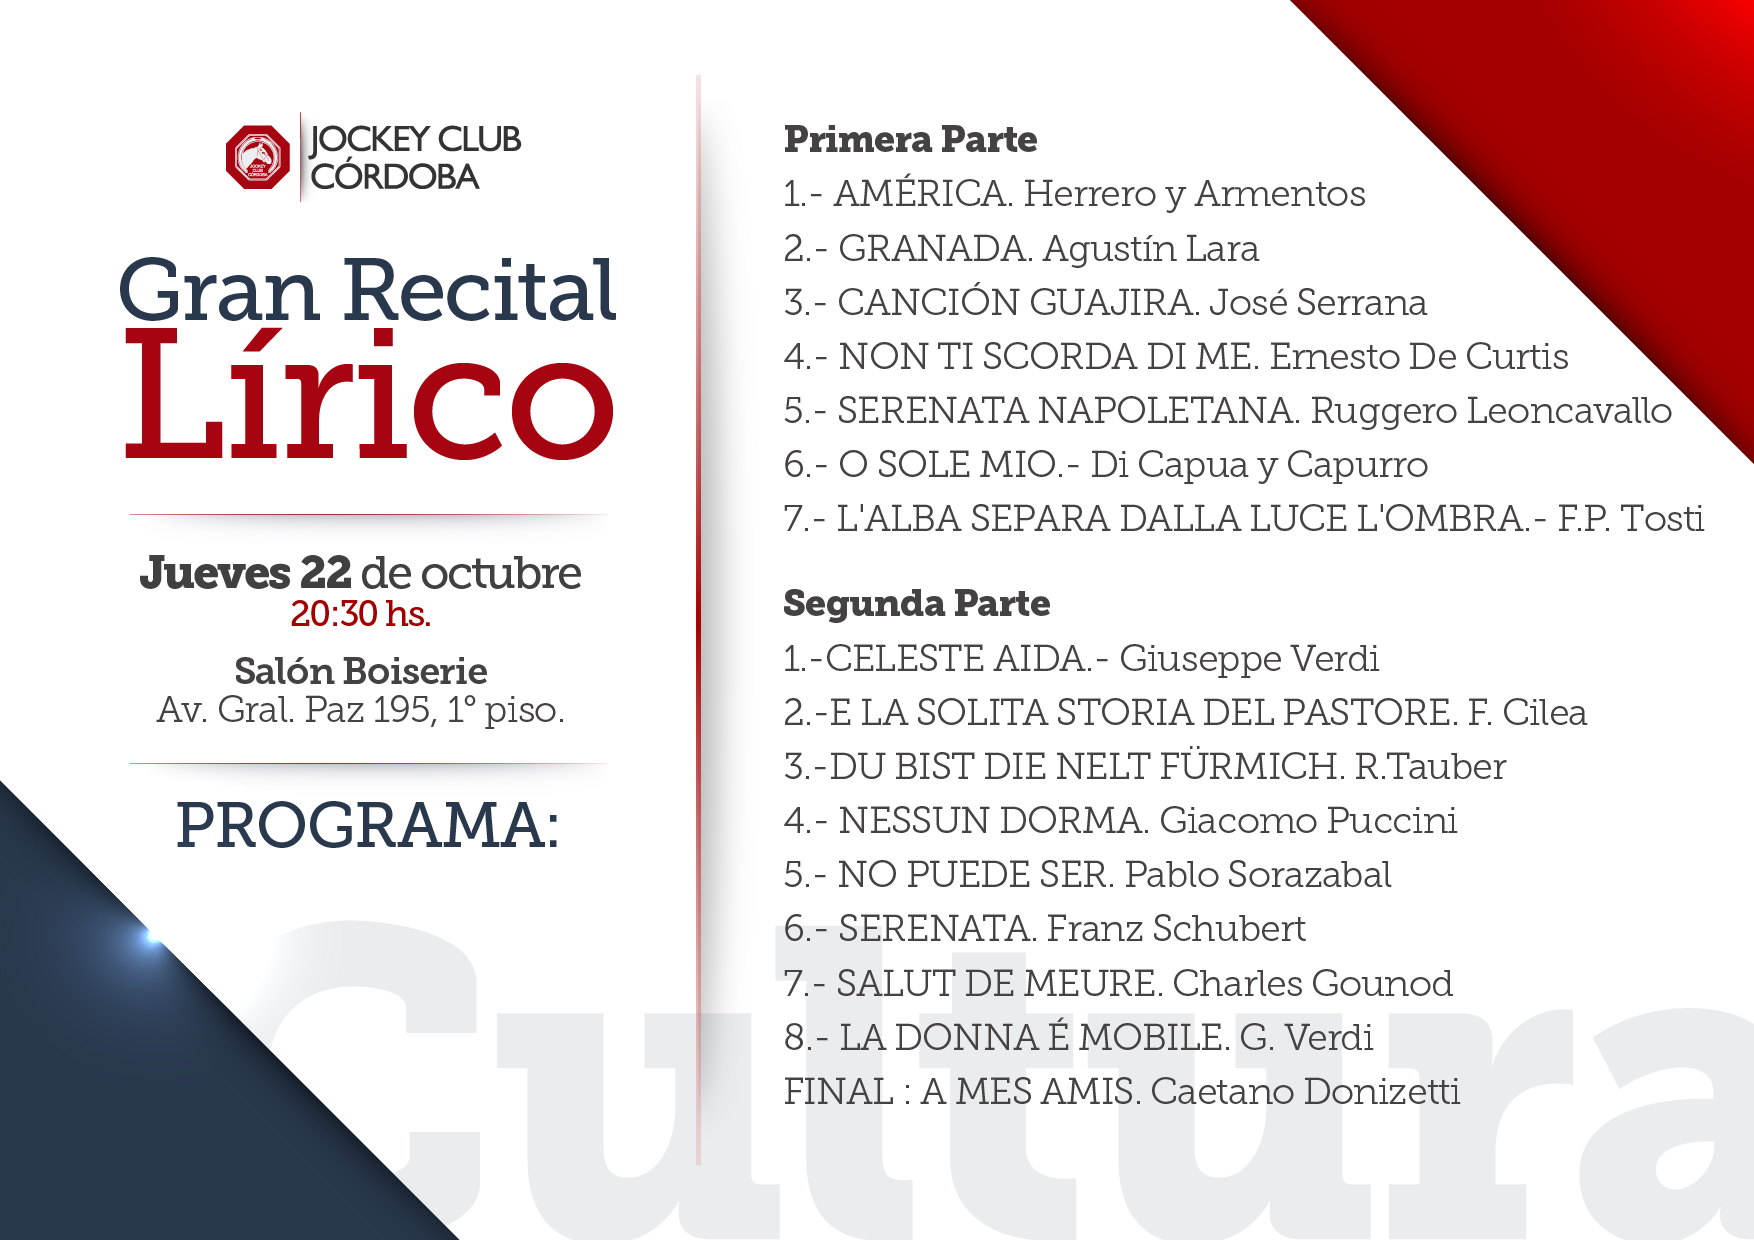 RECITAL LÍRICO -INVITACIONES- 14,85 x 10,5 cm-SubcomisiónDeCultura-2015-03